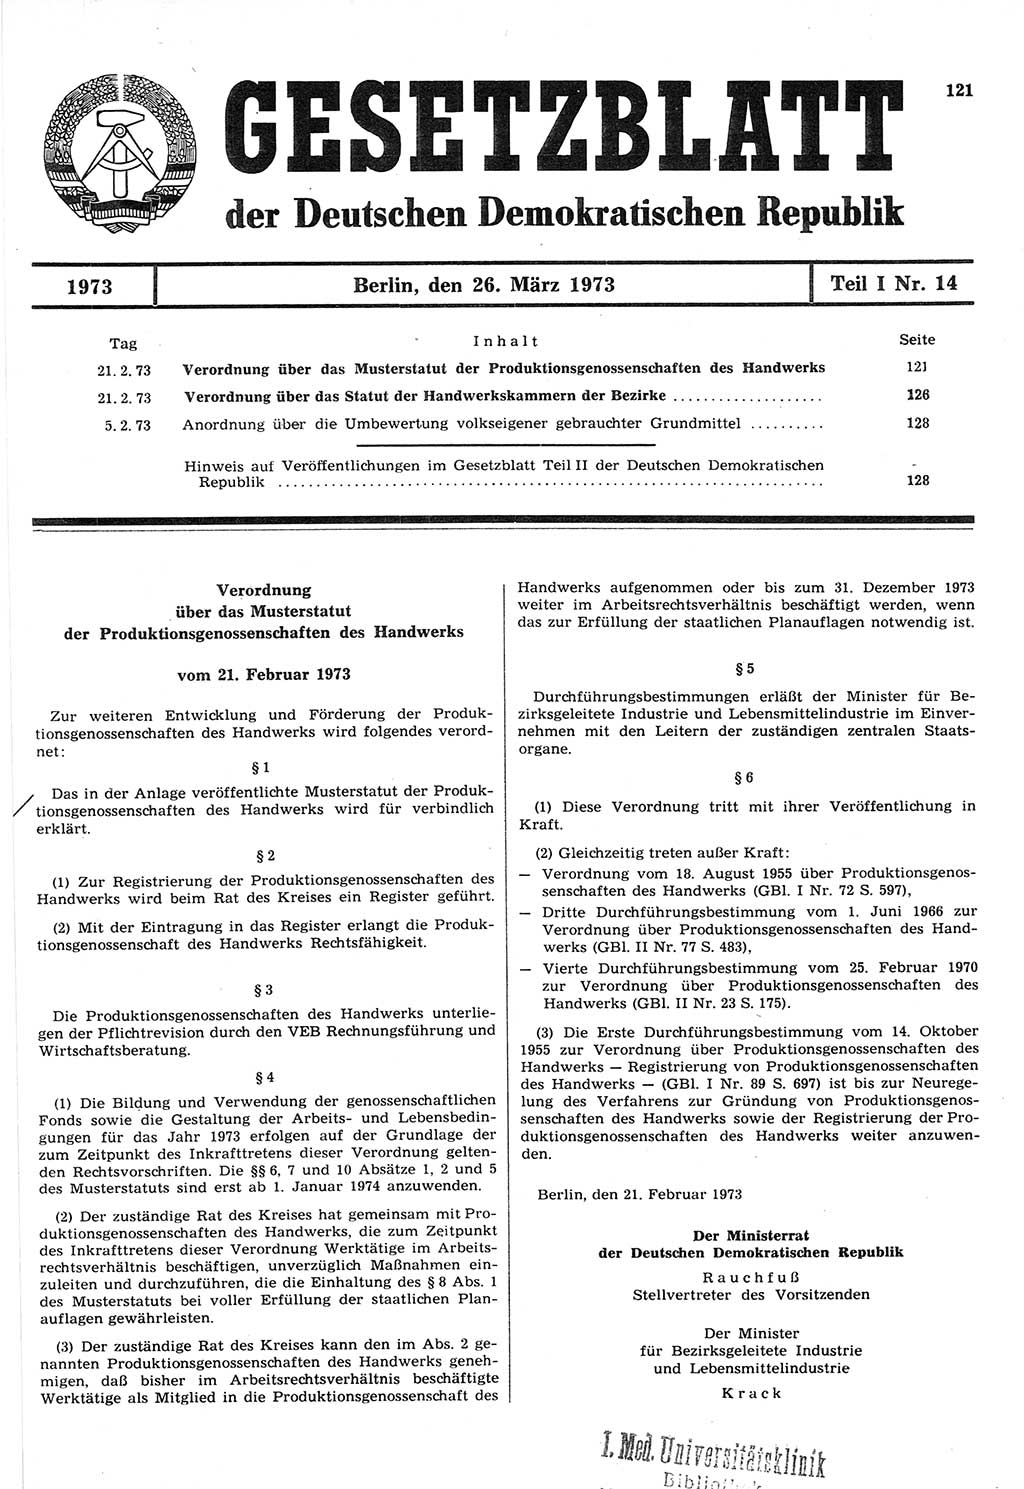 Gesetzblatt (GBl.) der Deutschen Demokratischen Republik (DDR) Teil Ⅰ 1973, Seite 121 (GBl. DDR Ⅰ 1973, S. 121)